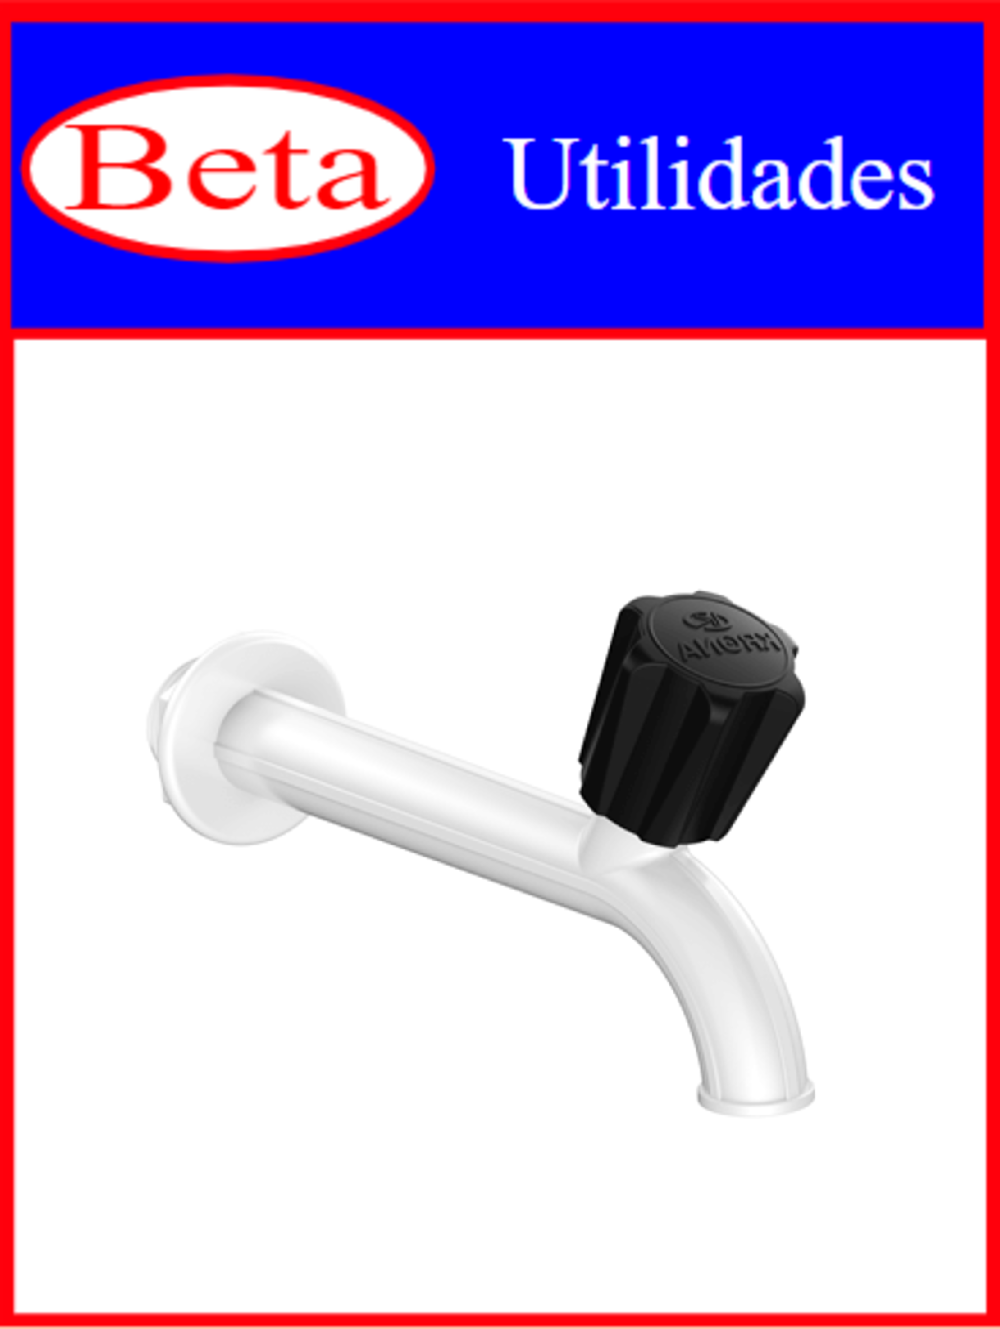 7898021401455 - BETA UTILIDADES TORNEIRA P/ PIA CANO LON